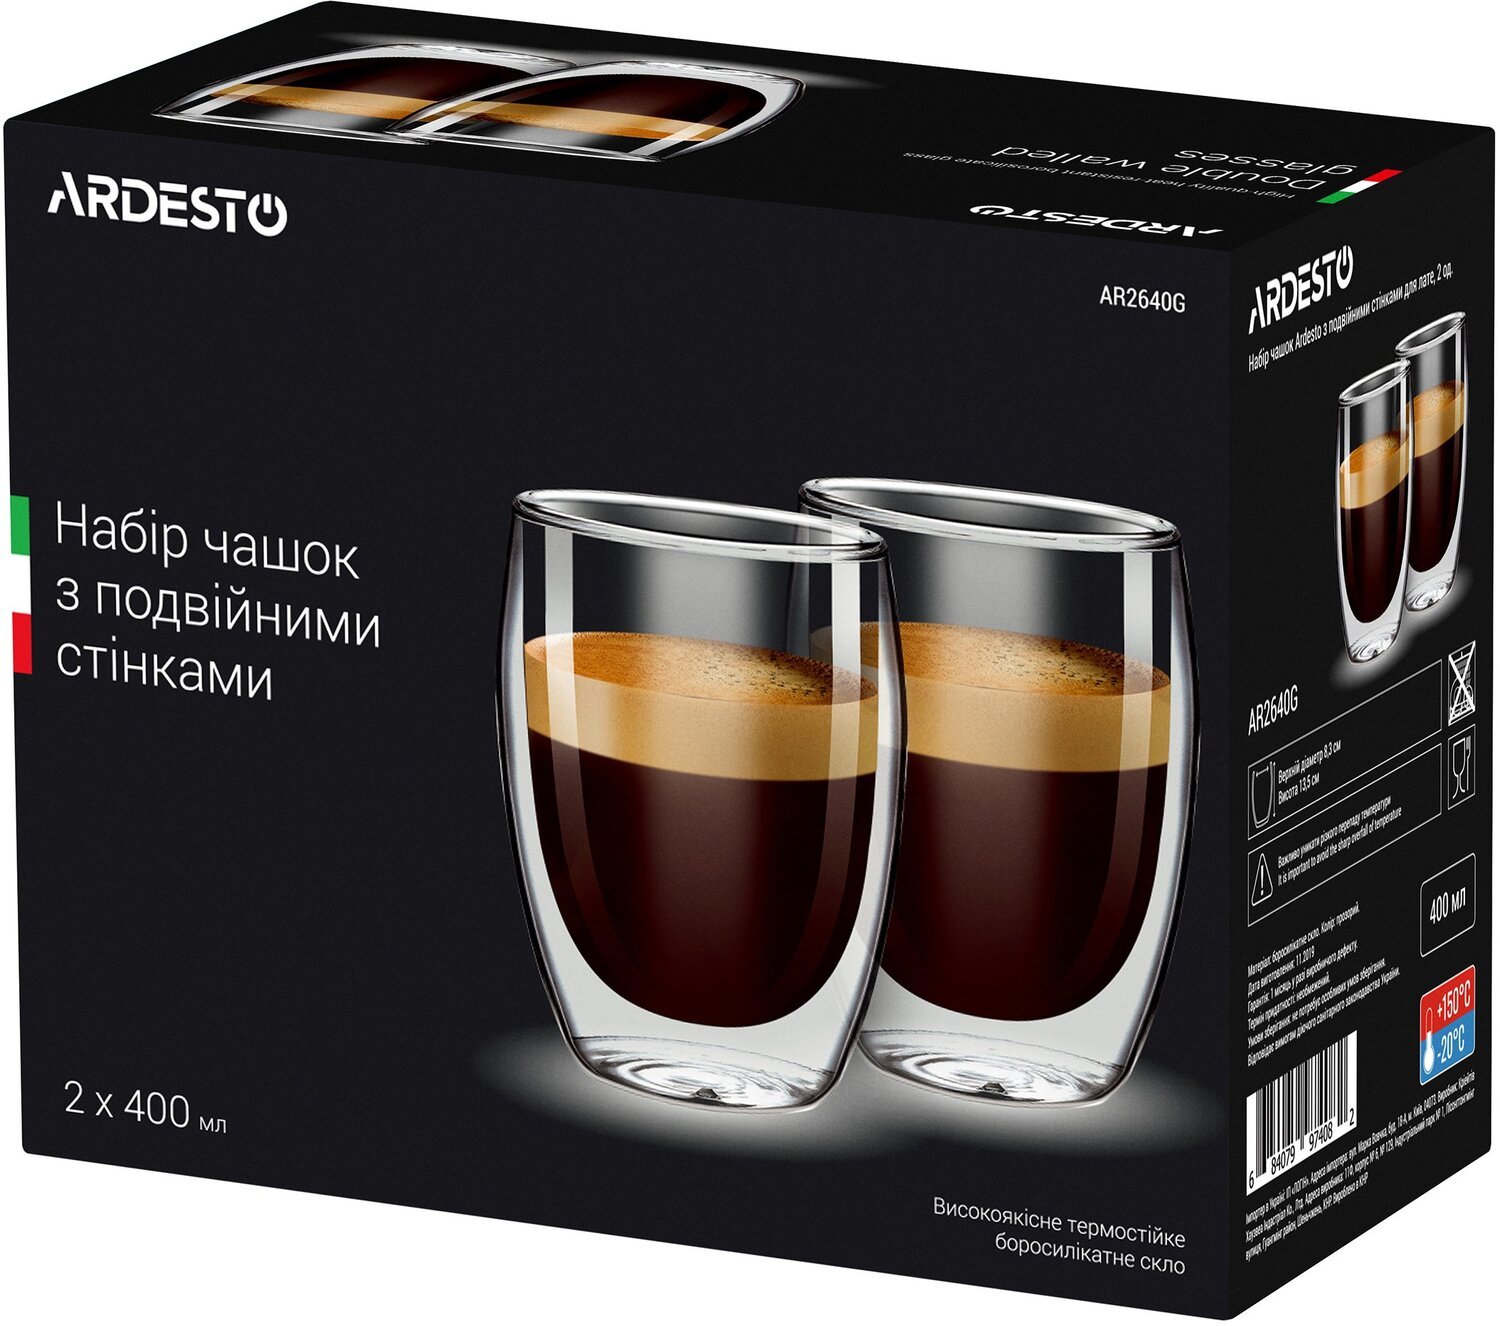  Набір чашок Ardesto з подвійними стінками для латте, 400 мл, 2 шт. AR2640G фото